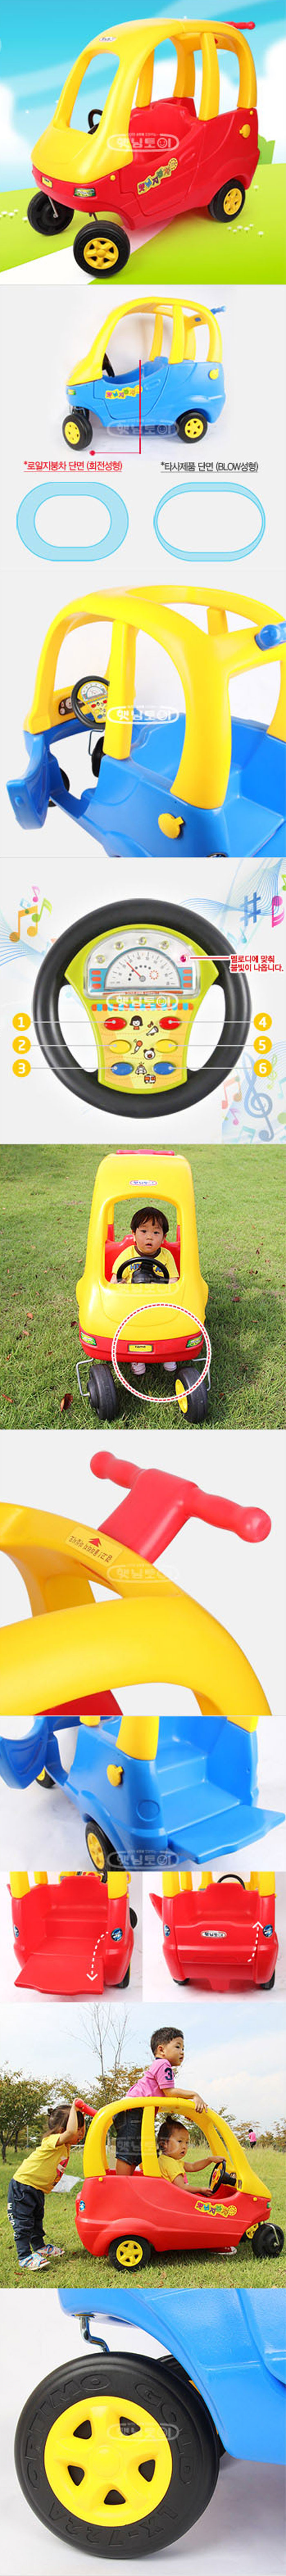 Haenim Korea Kids Ride Car - Double HN-283